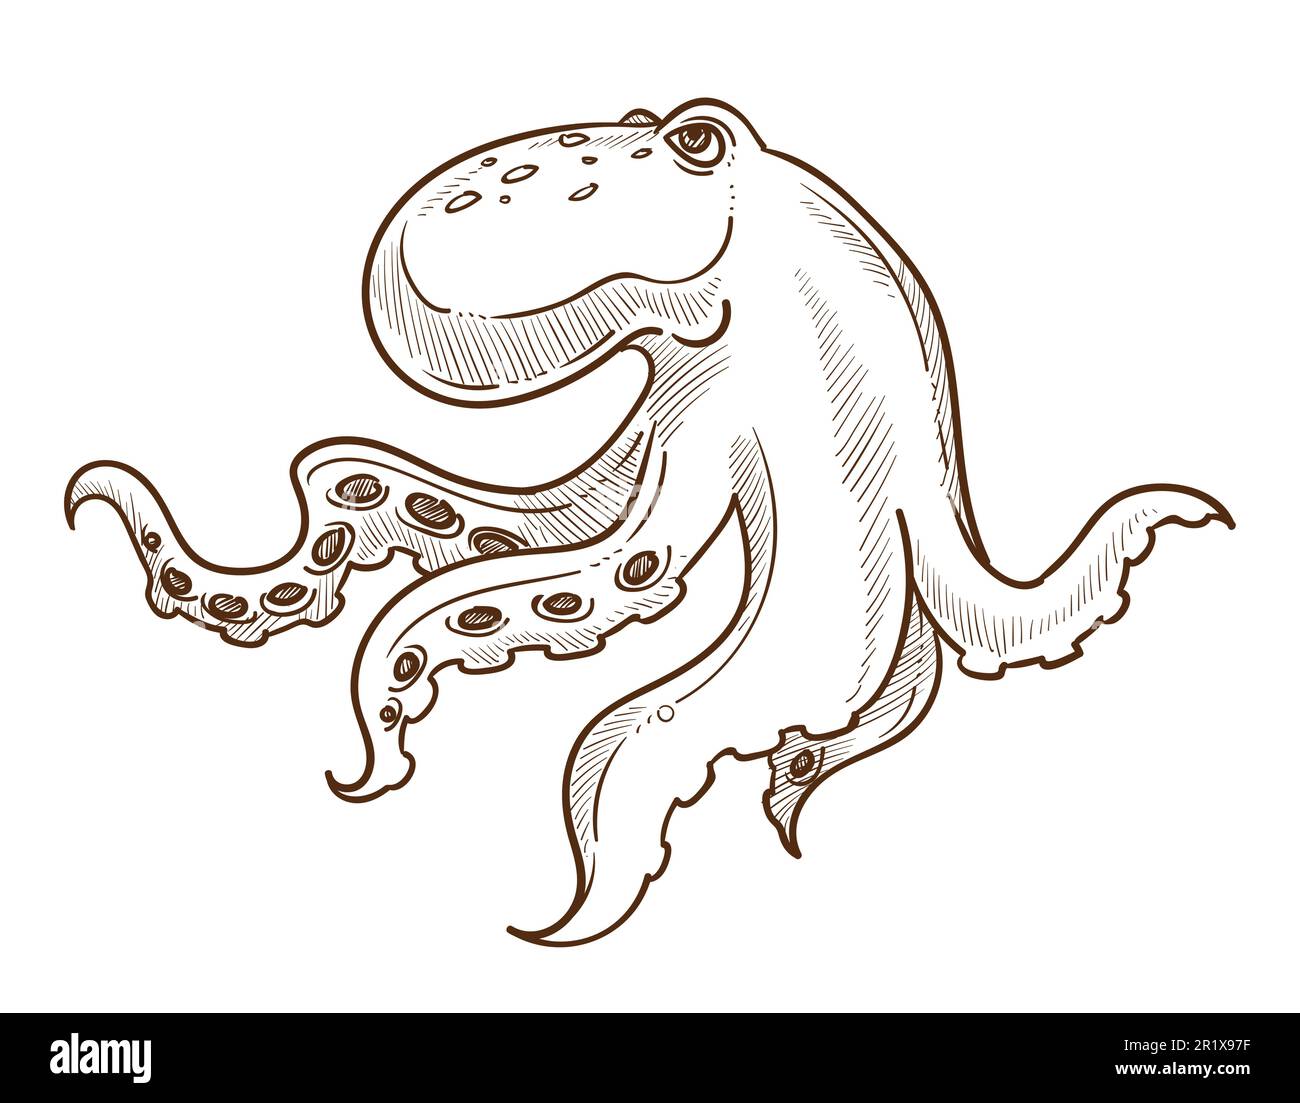 Animale subacqueo, polpo isolato schizzo, creatura marina Illustrazione Vettoriale